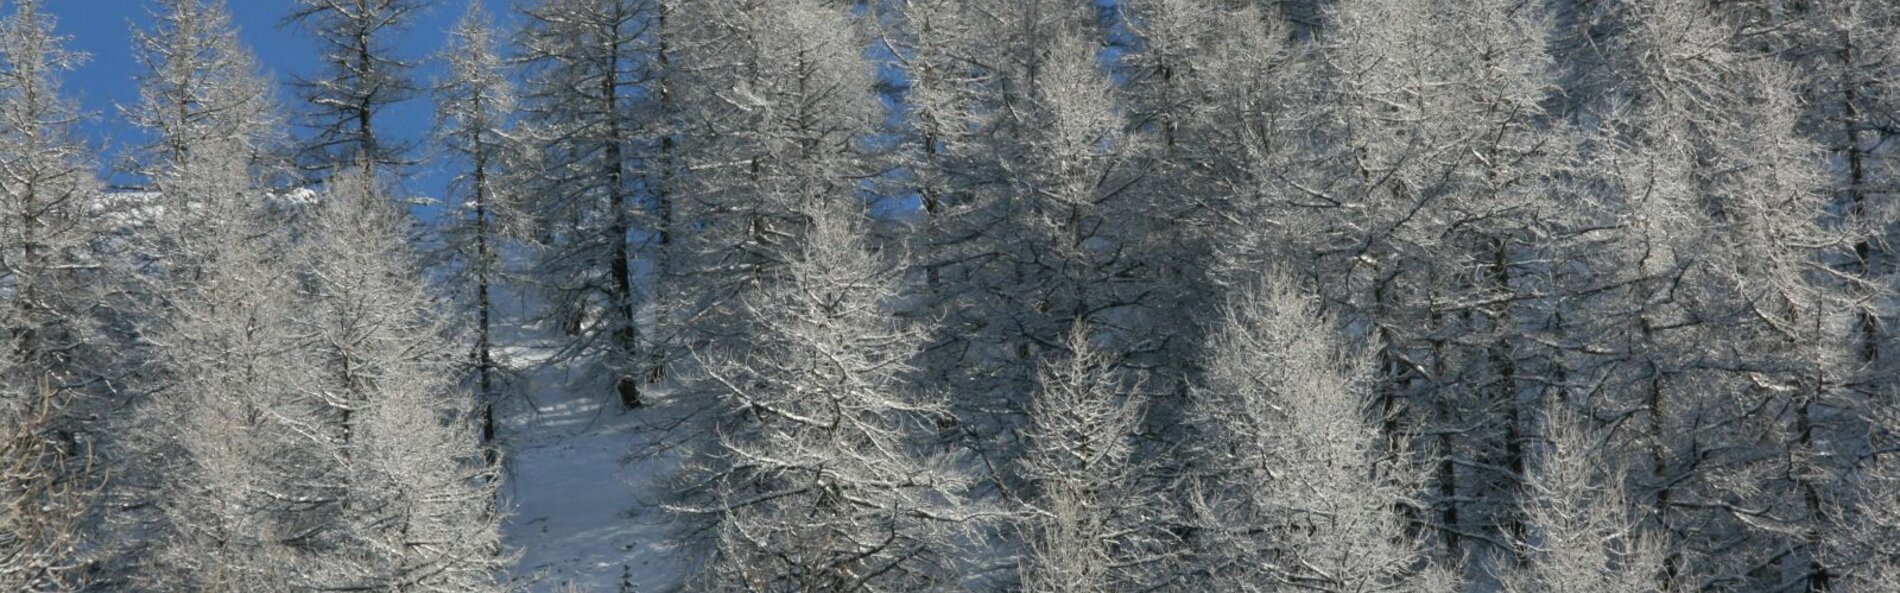 Ein schneebedeckter Wald